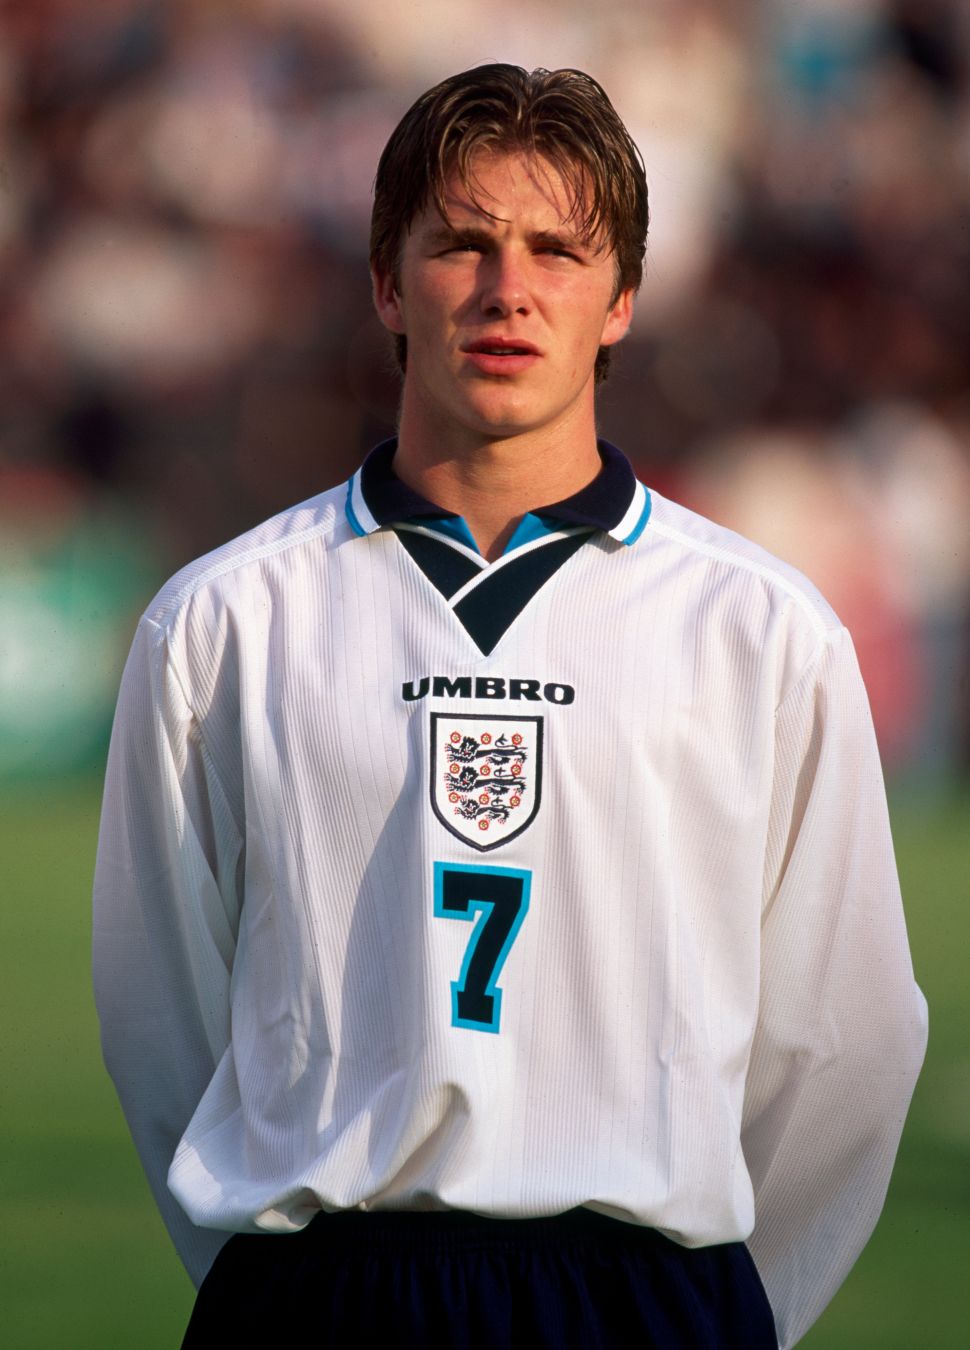 Áo đấu Beckham 7 England 1995 1996 1997 home shirt jersey white Umbro